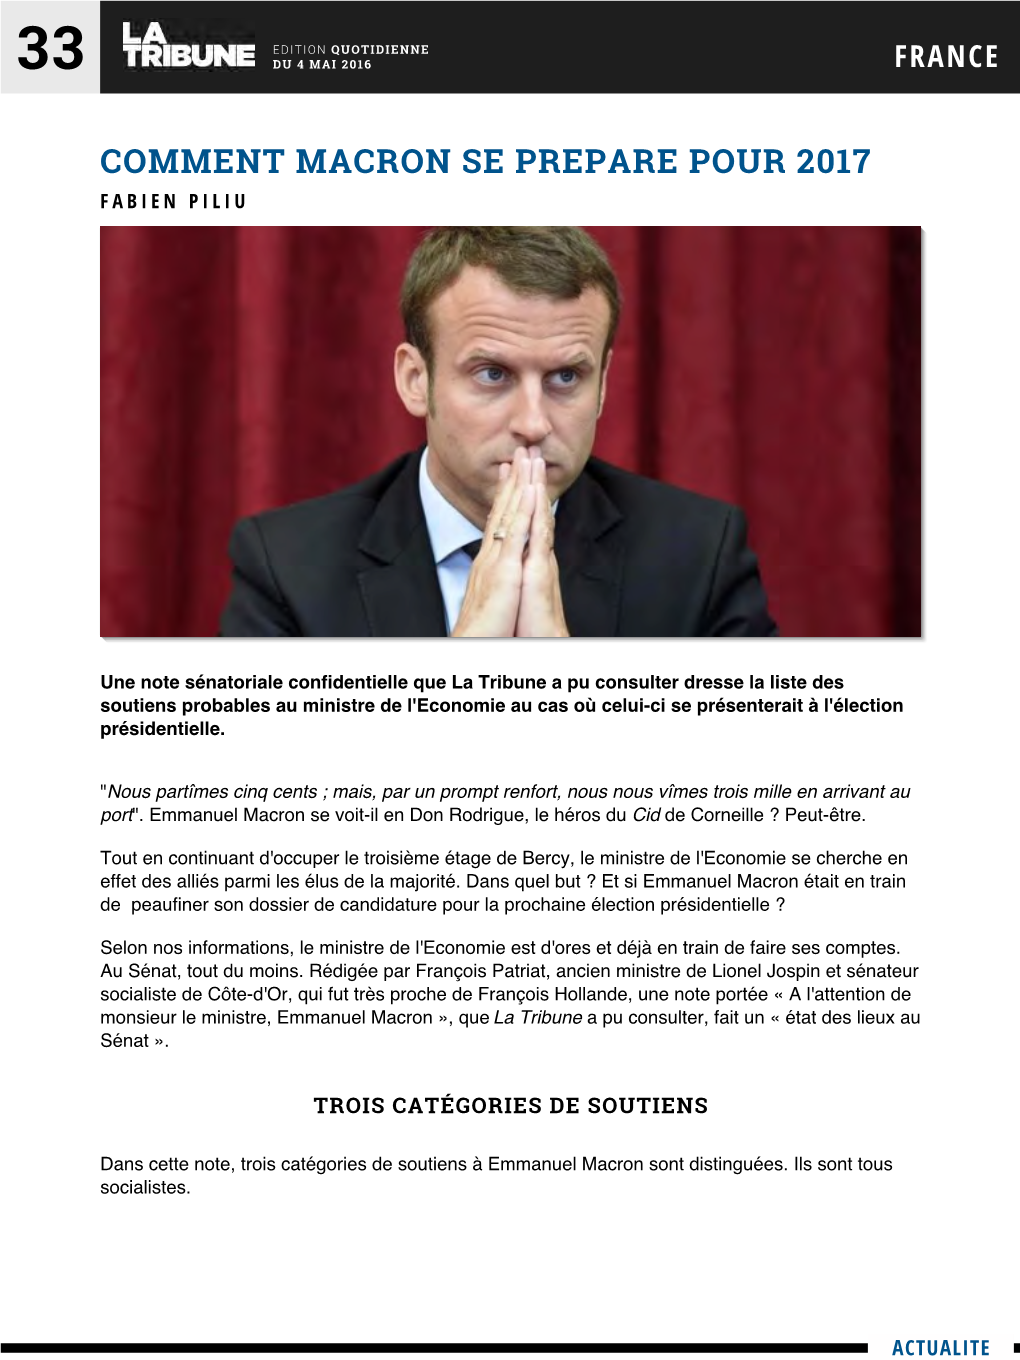 Comment Macron Se Prepare Pour 2017 Fabien Piliu